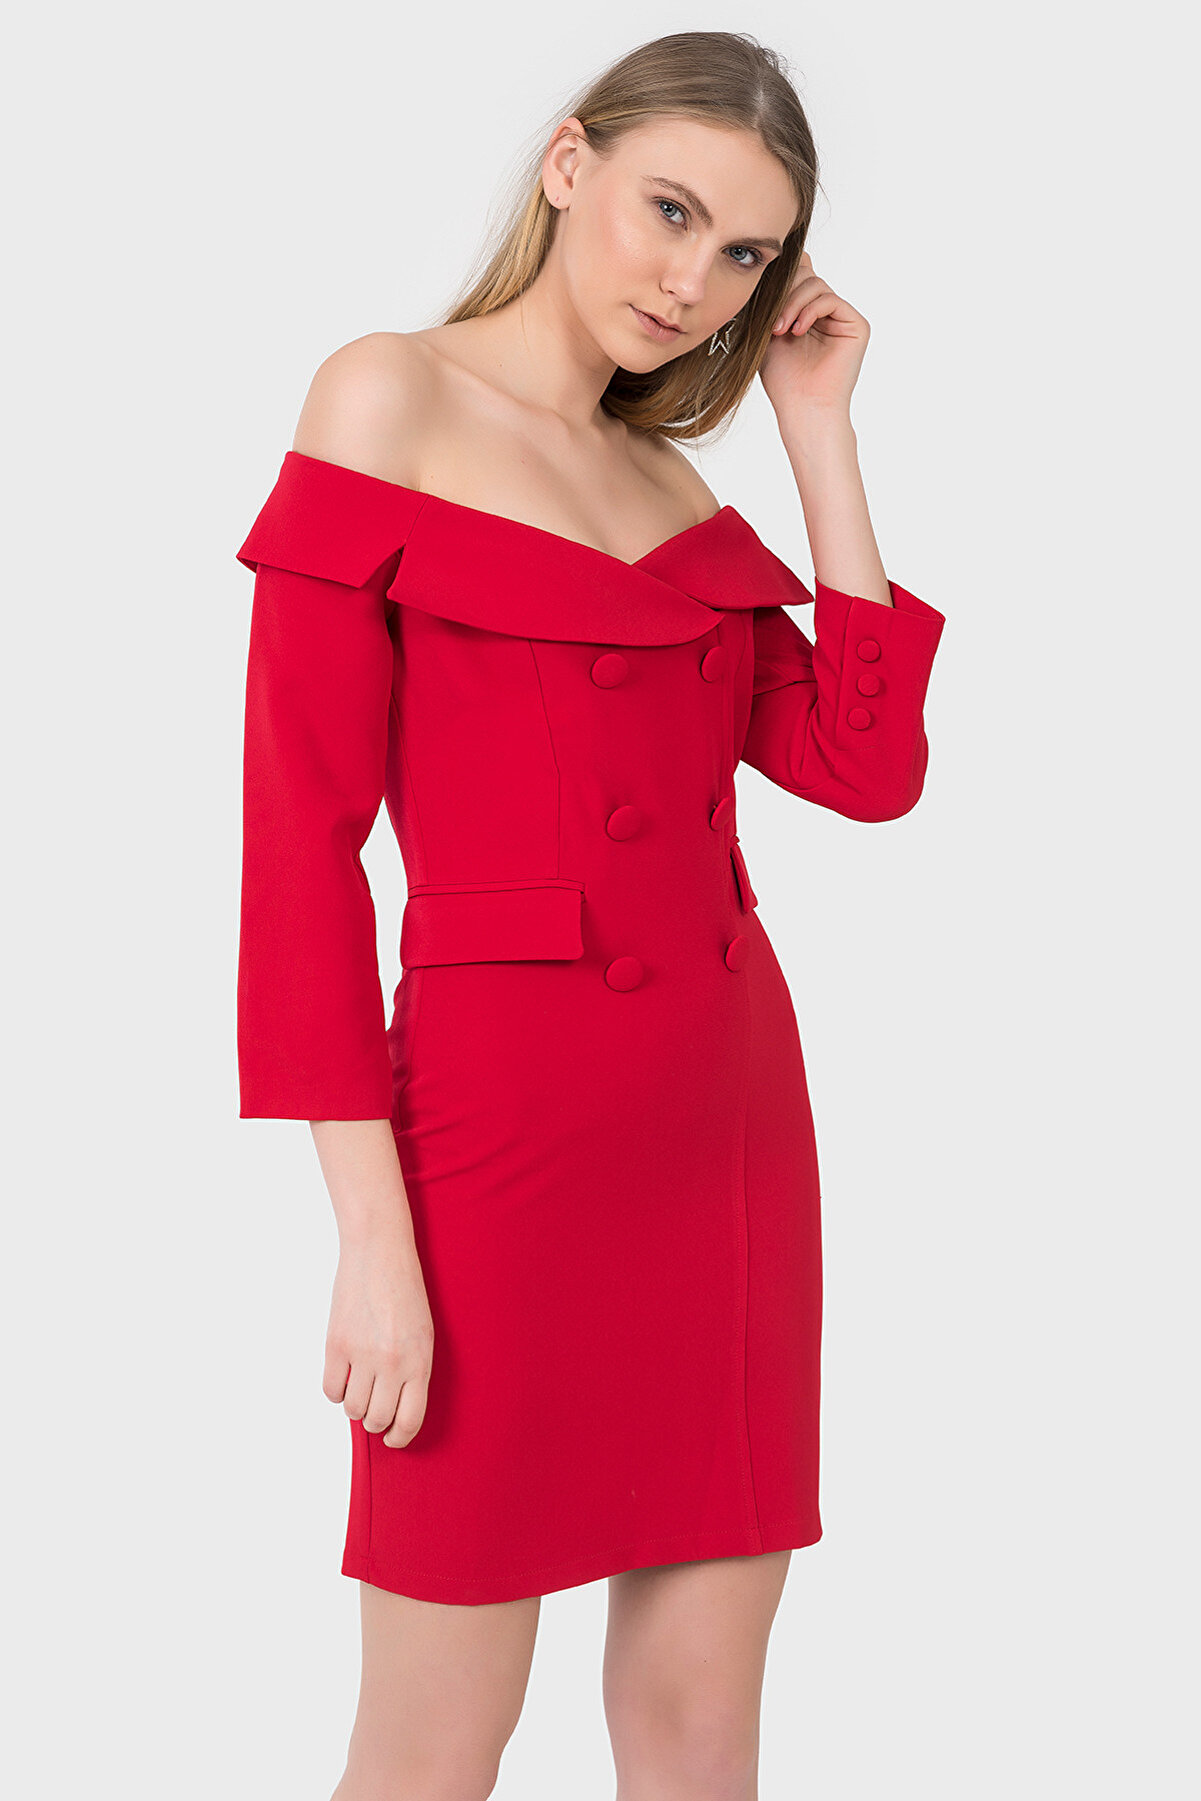 İroni Kadın Kırmızı Geniş Yakalı Blazer Elbise 5153-891